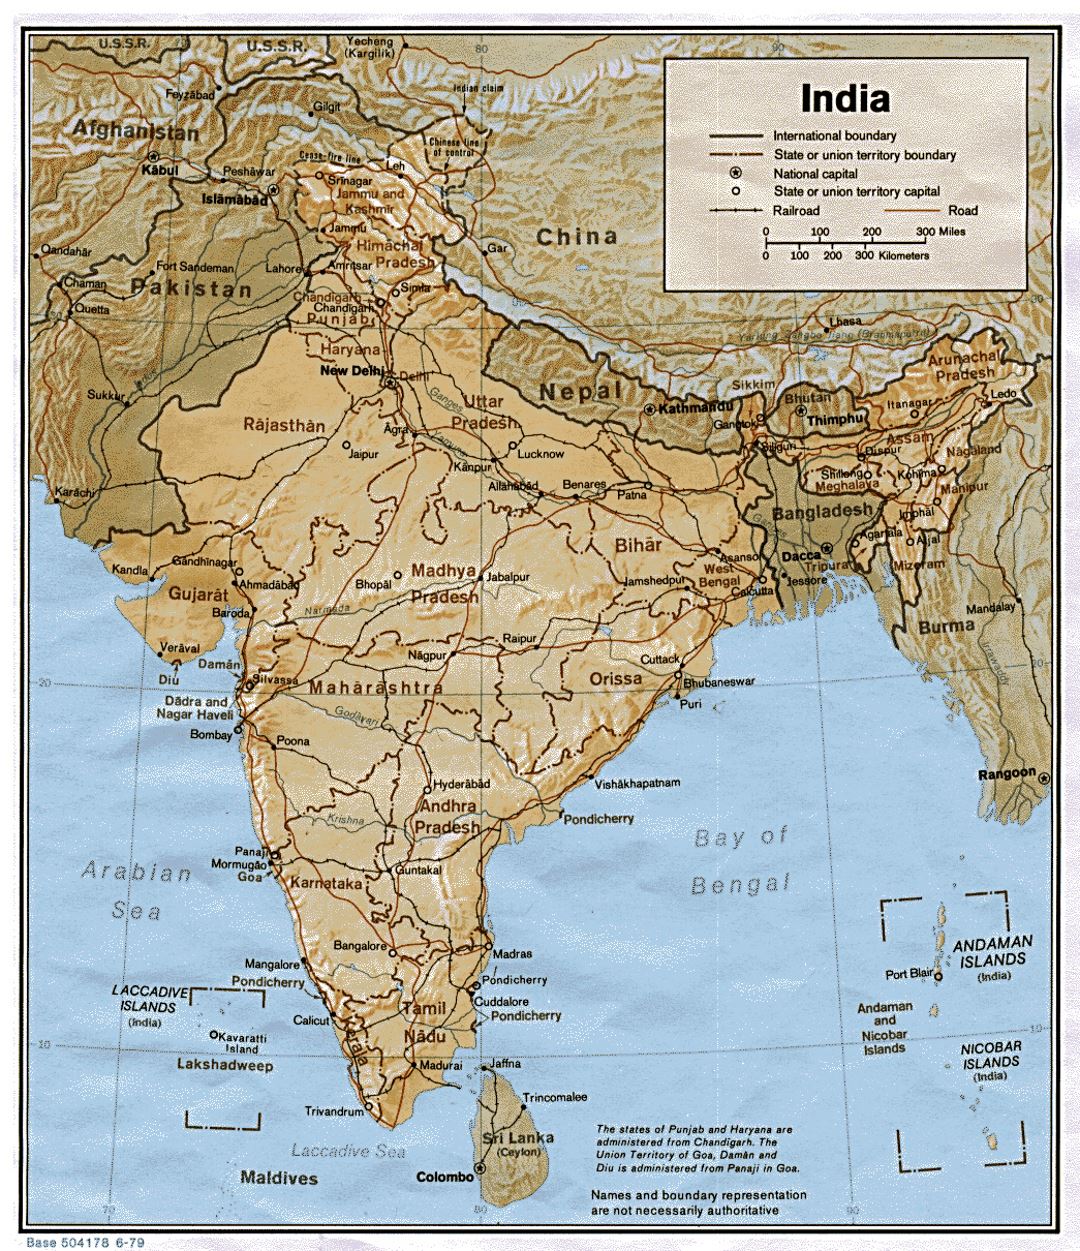 Detallado mapa político y administrativo de la India con socorro, carreteras, ferrocarriles y principales ciudades - 1979